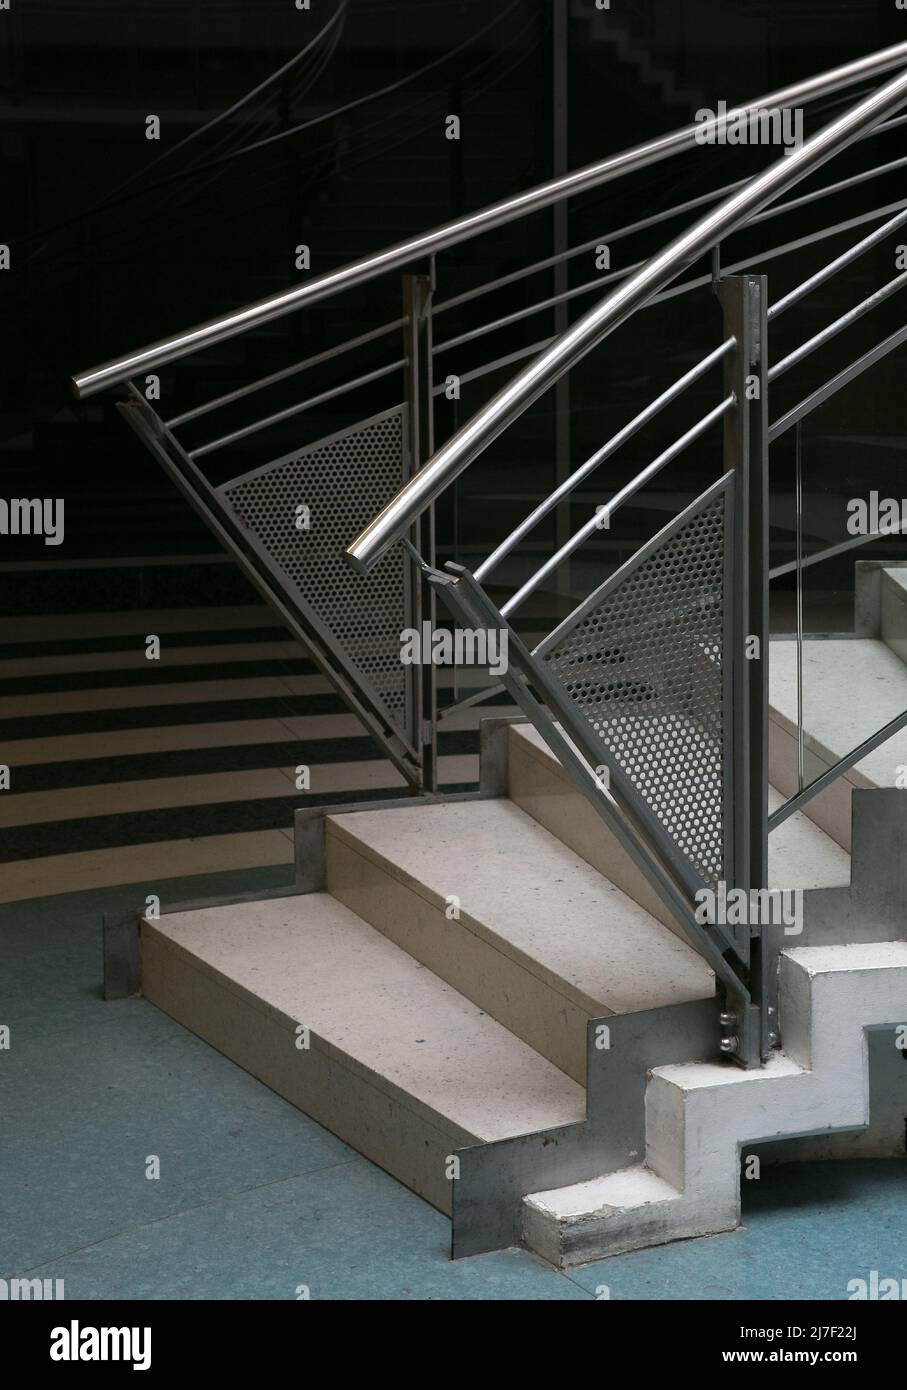 Halle S  Charlotten-Center 2802 Einkaufszentrum der frühen 1990er Jahre mit für diese Zeit typischem Treppenabgang Stock Photo